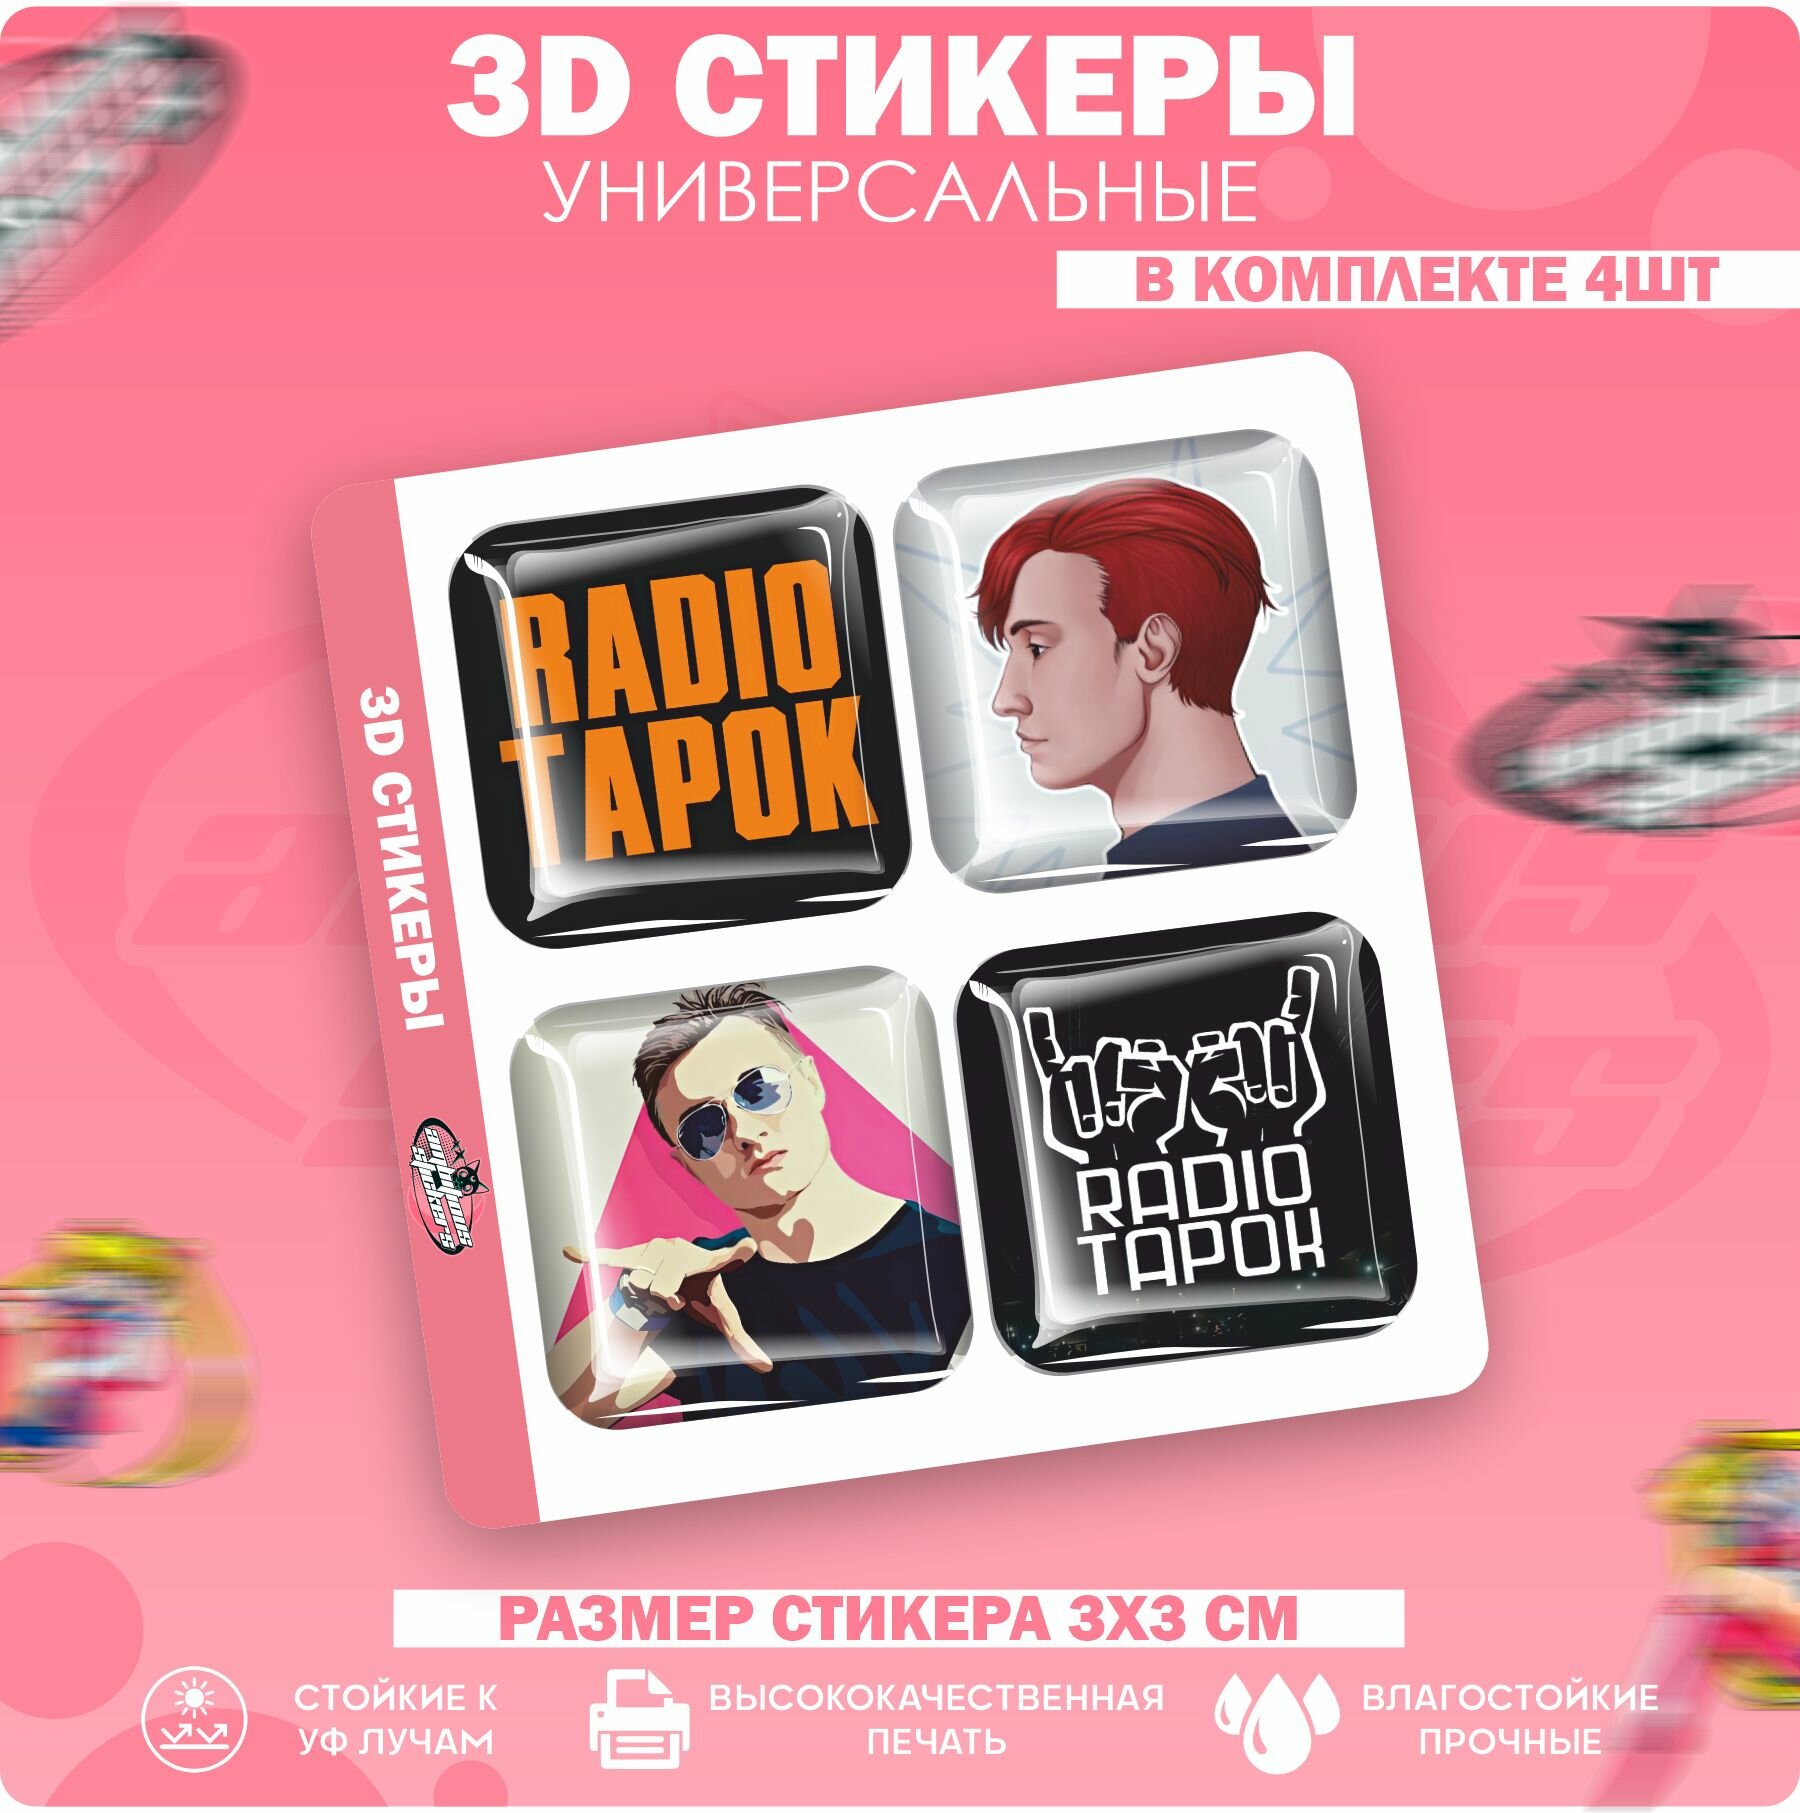 3D стикеры наклейки на телефон RADIO TAPOK